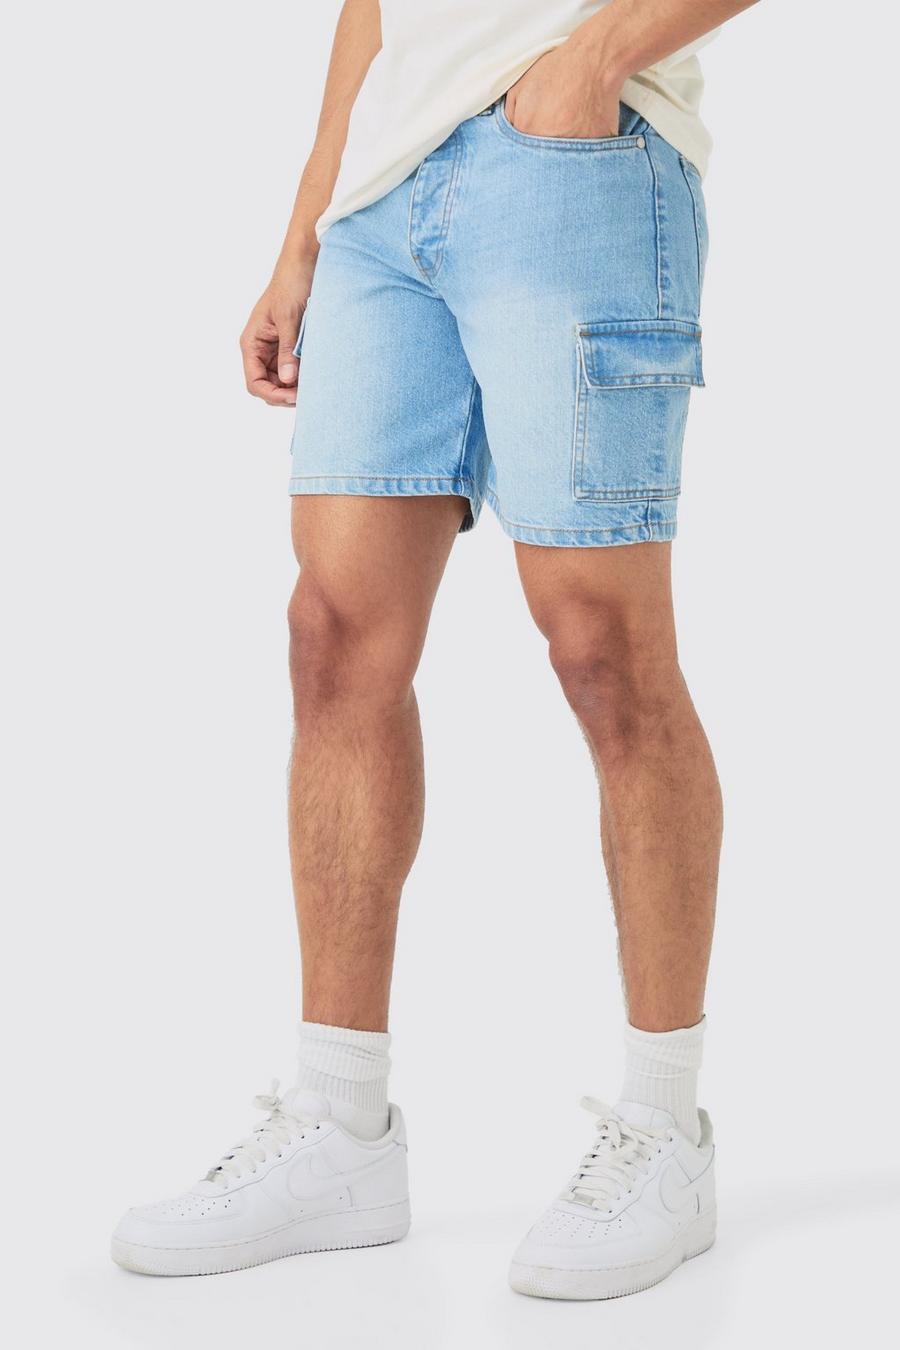 Pantalones cortos vaqueros cargo ajustados sin tratar en azul claro, Light blue image number 1